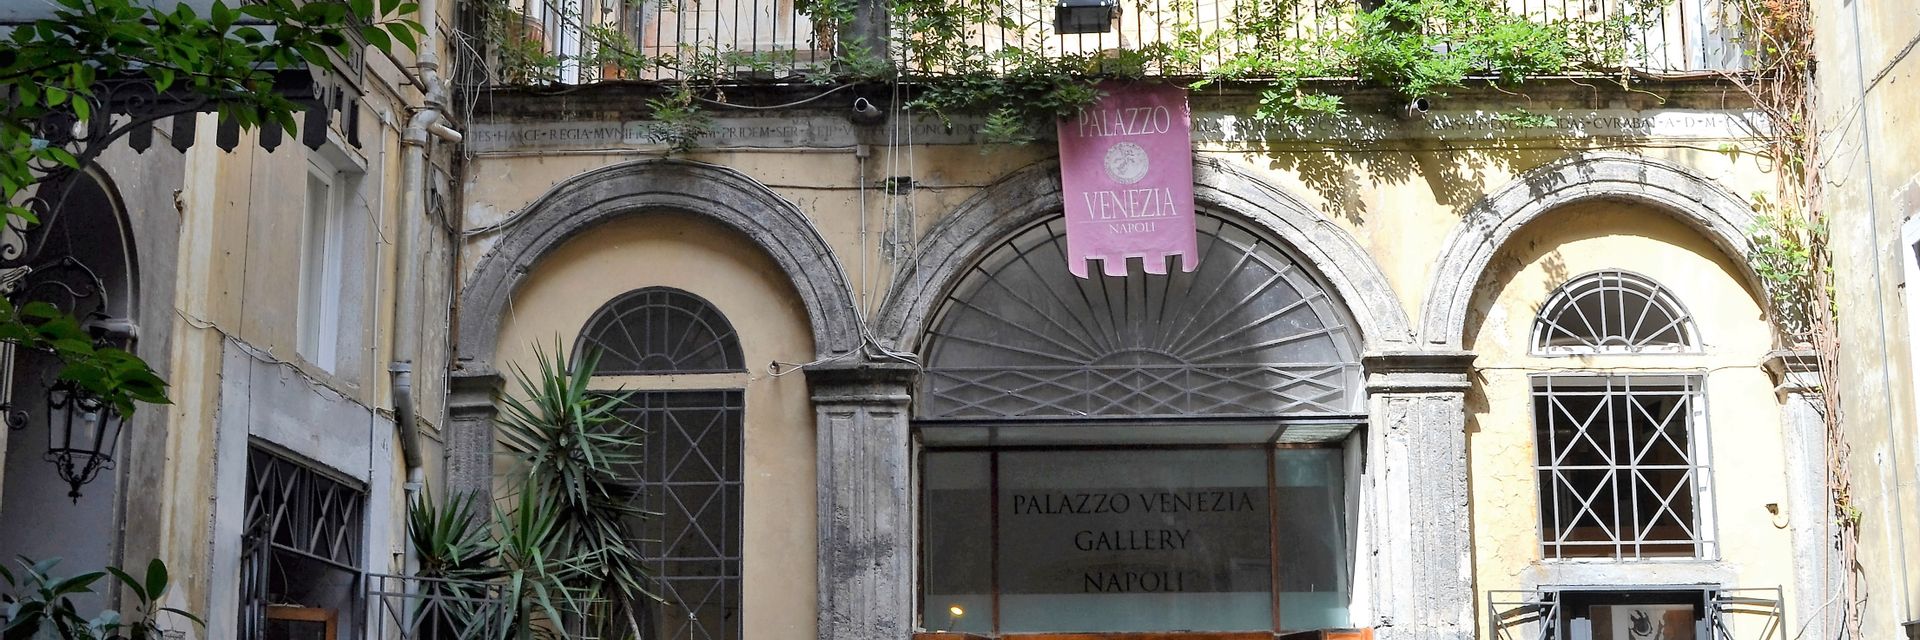 Palazzo Venezia in Naples